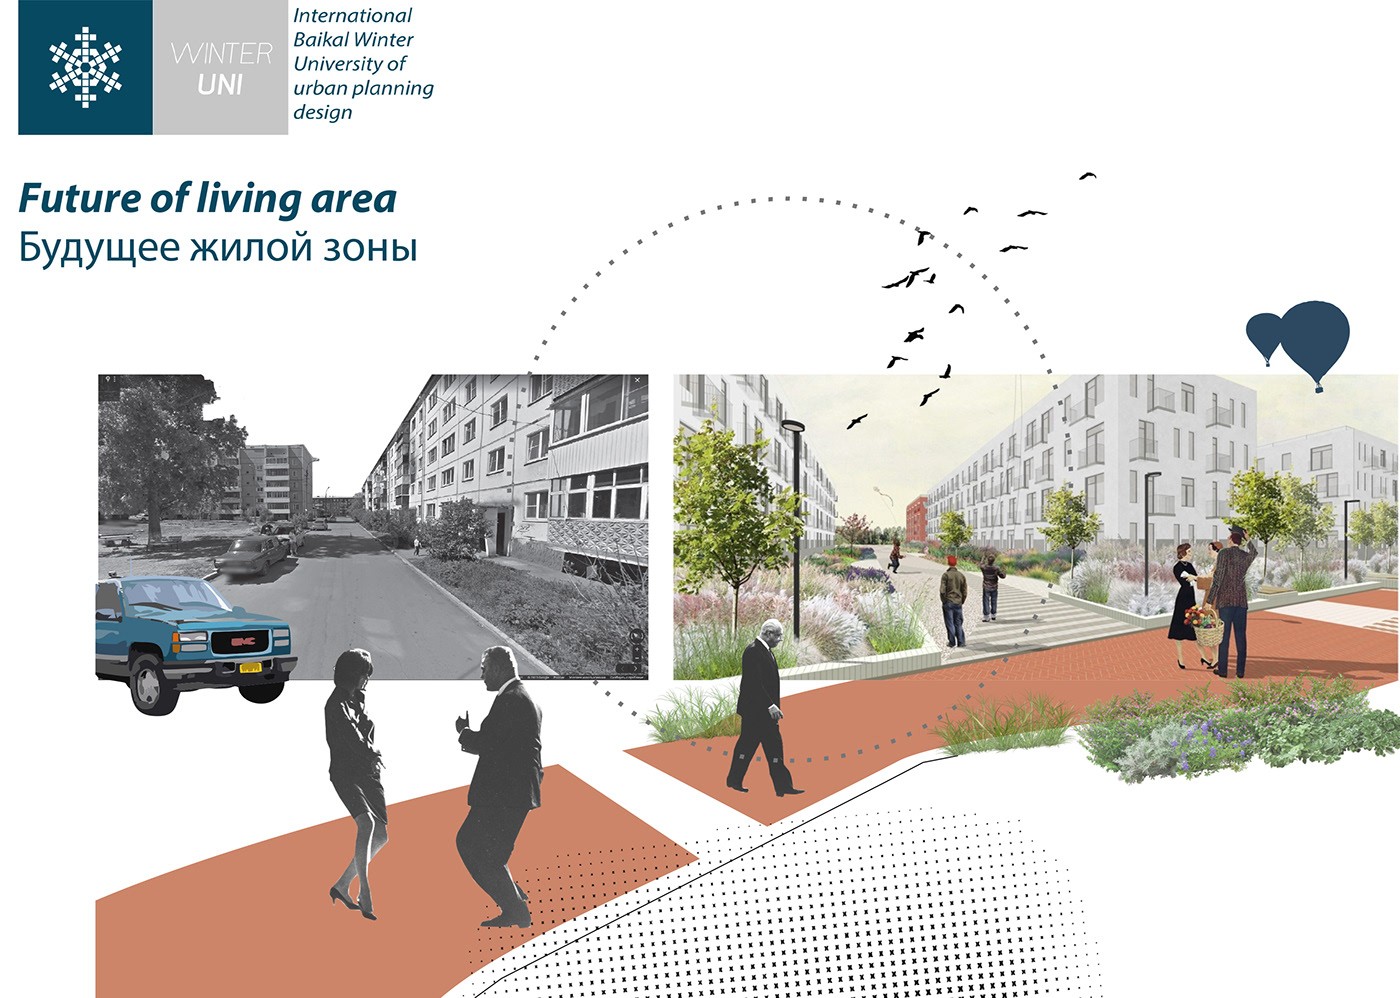 توسعه مجدد مناطق ناراحت کننده (ژیلکینو) |  آزمایشگاه طراحی شهری 11